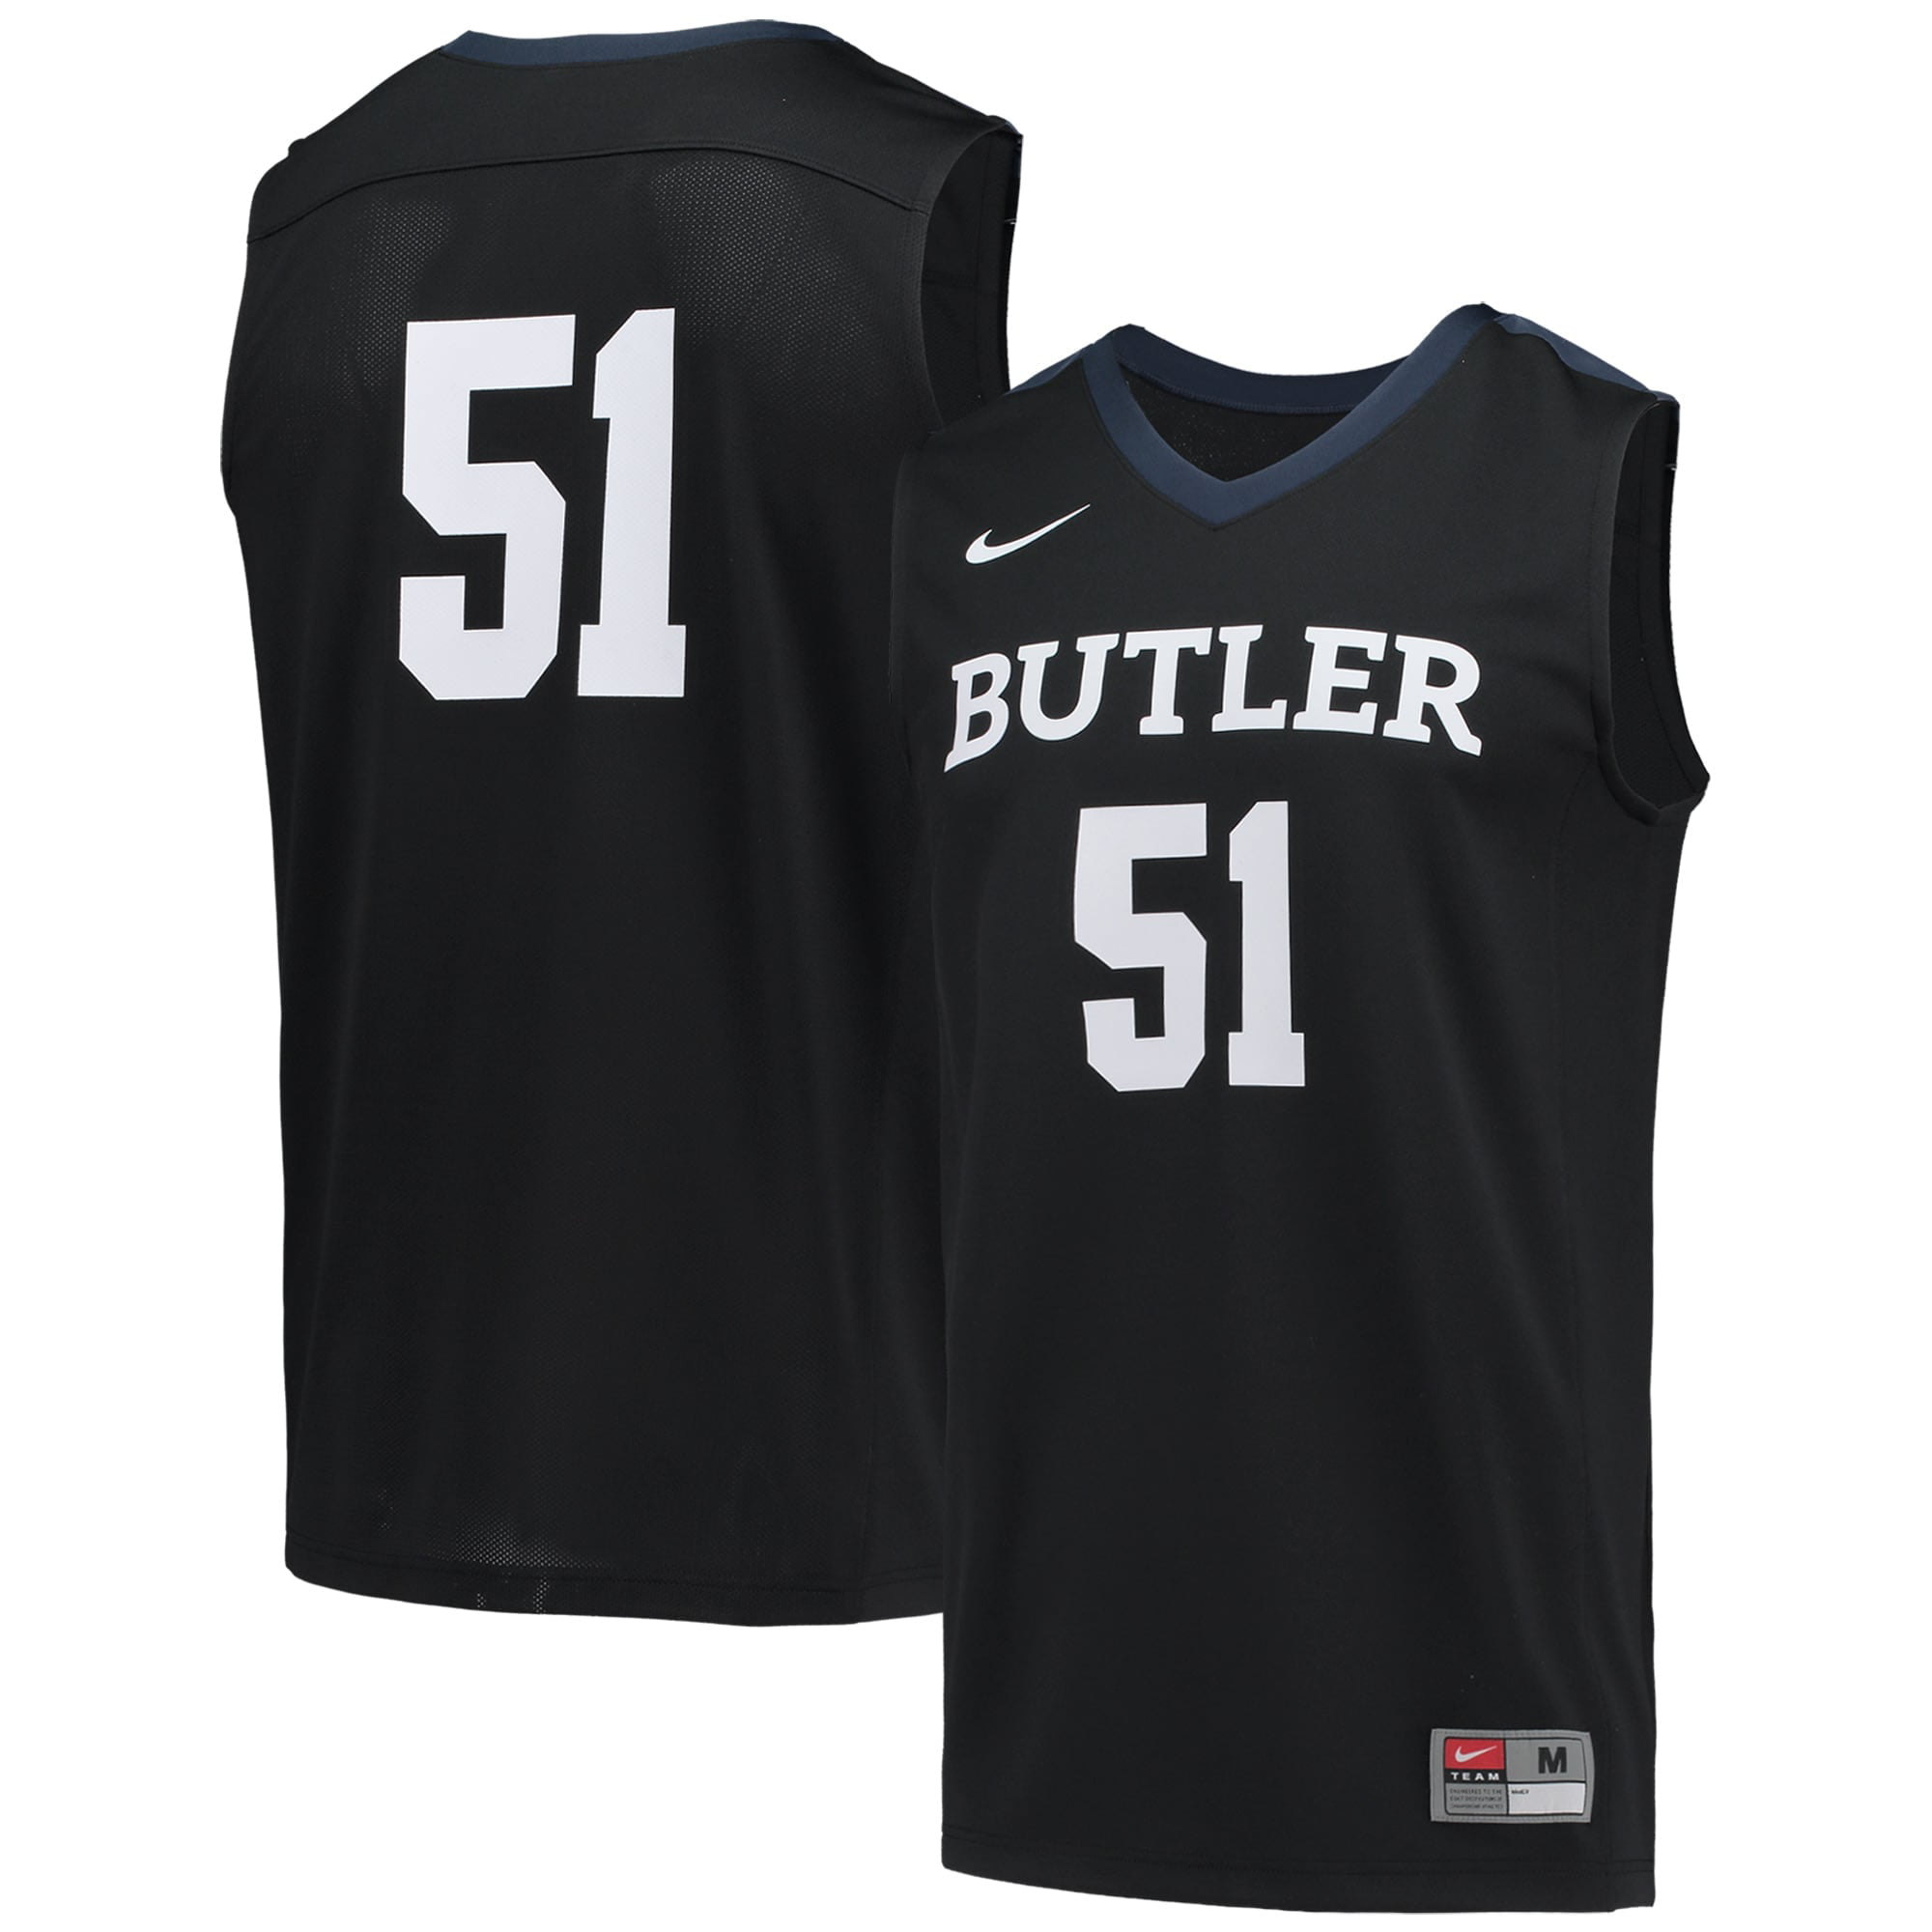 butler basketball jersey